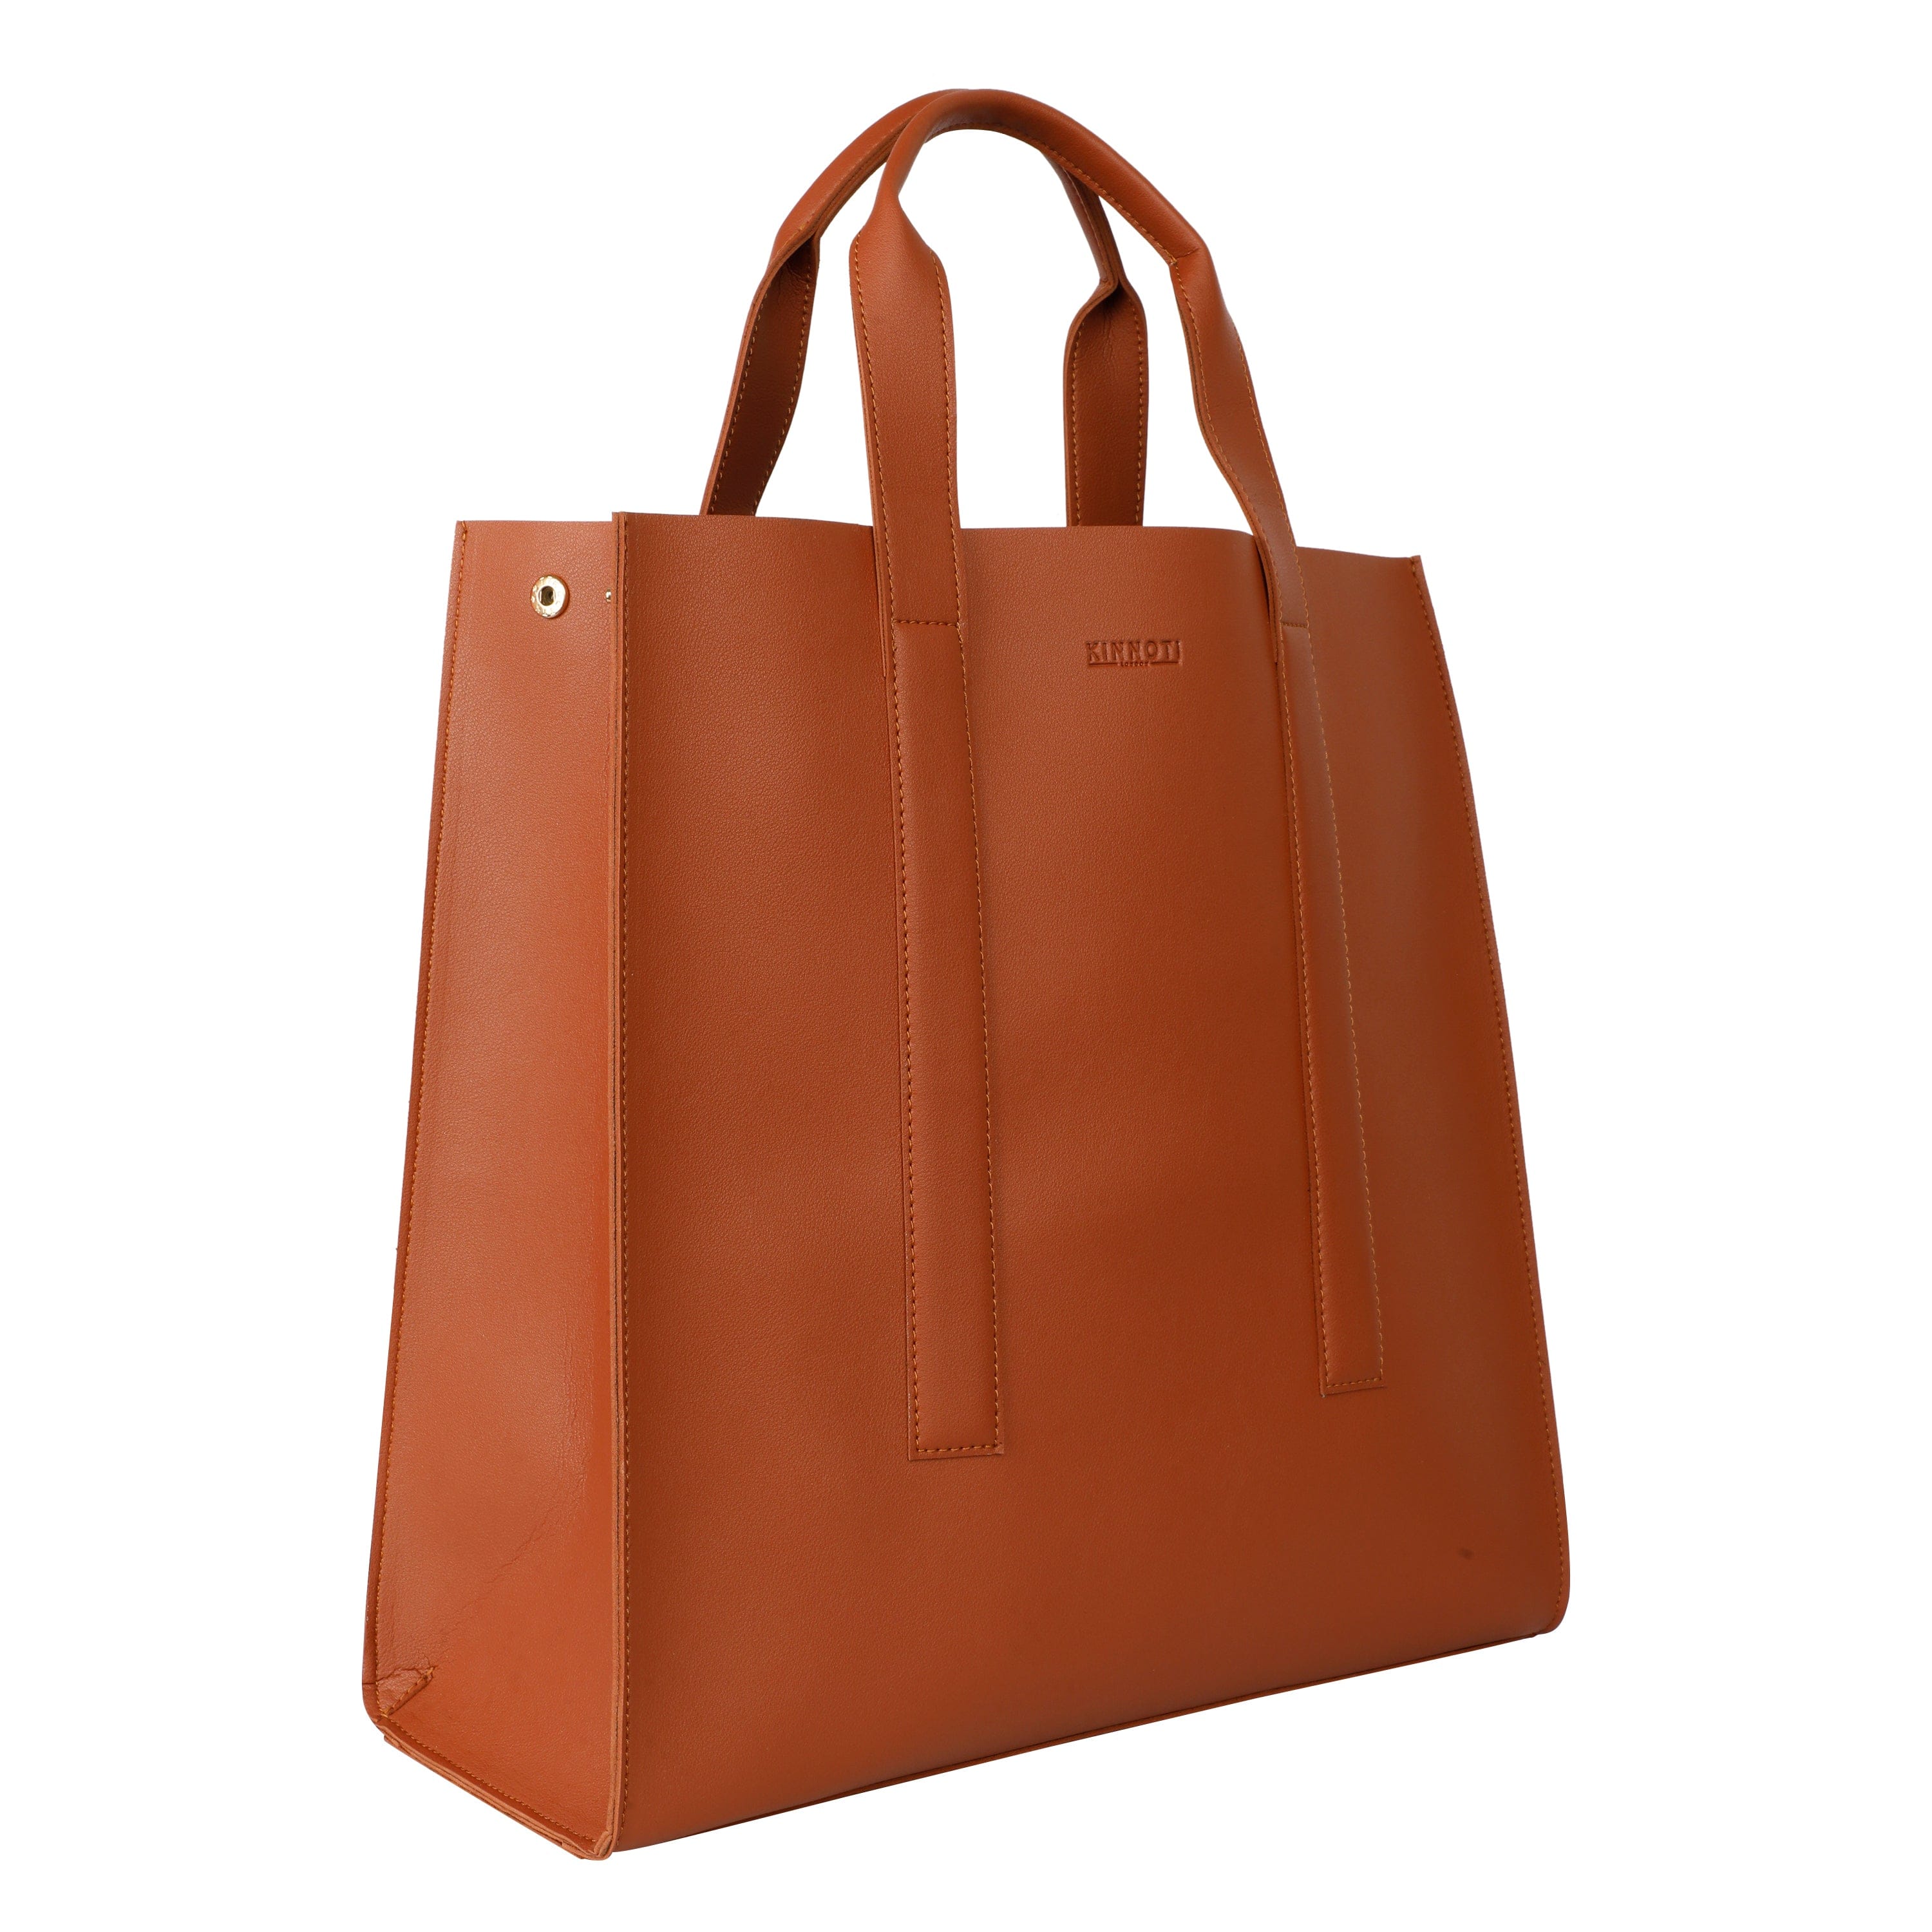 kinnoti Handbags Tan Vegan Leather Tote bag